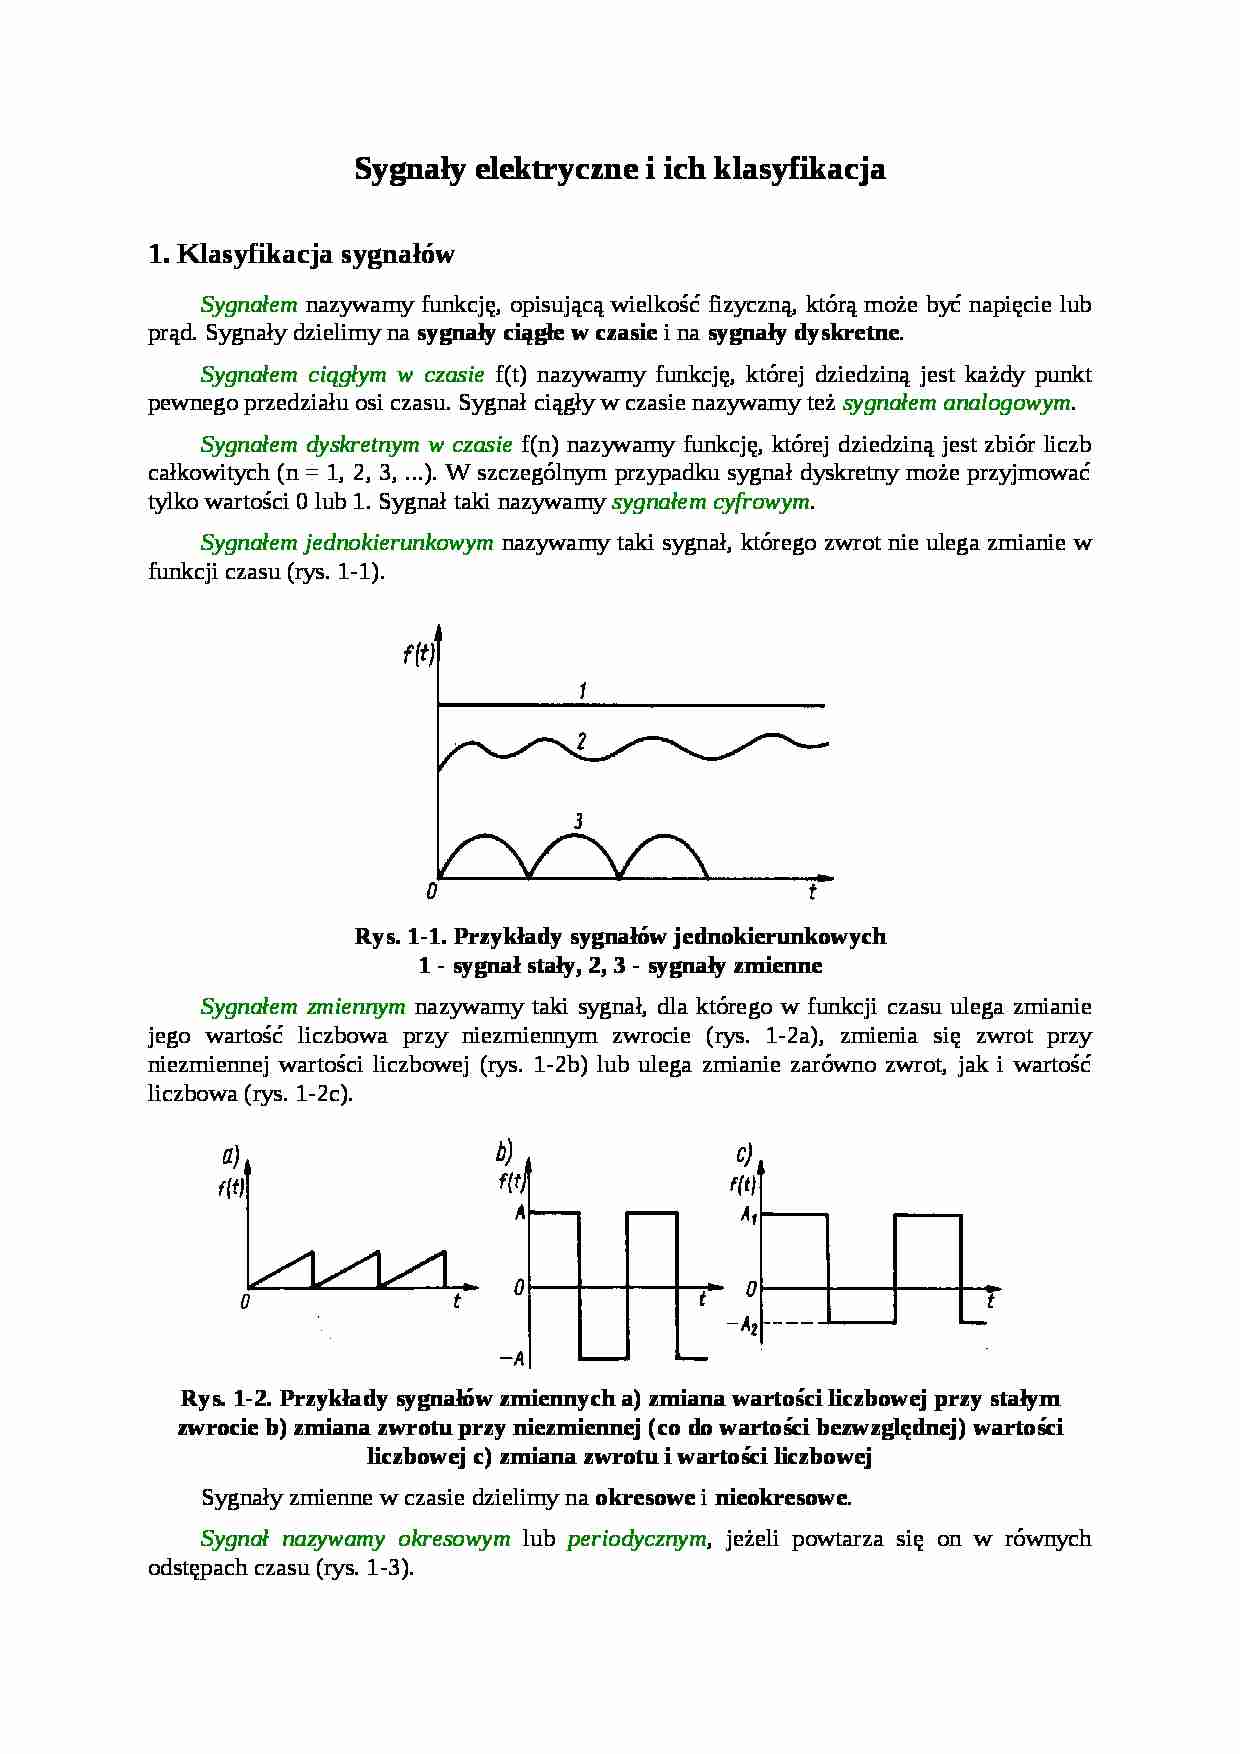 Sygnały elektryczne i ich klasyfikacja - strona 1